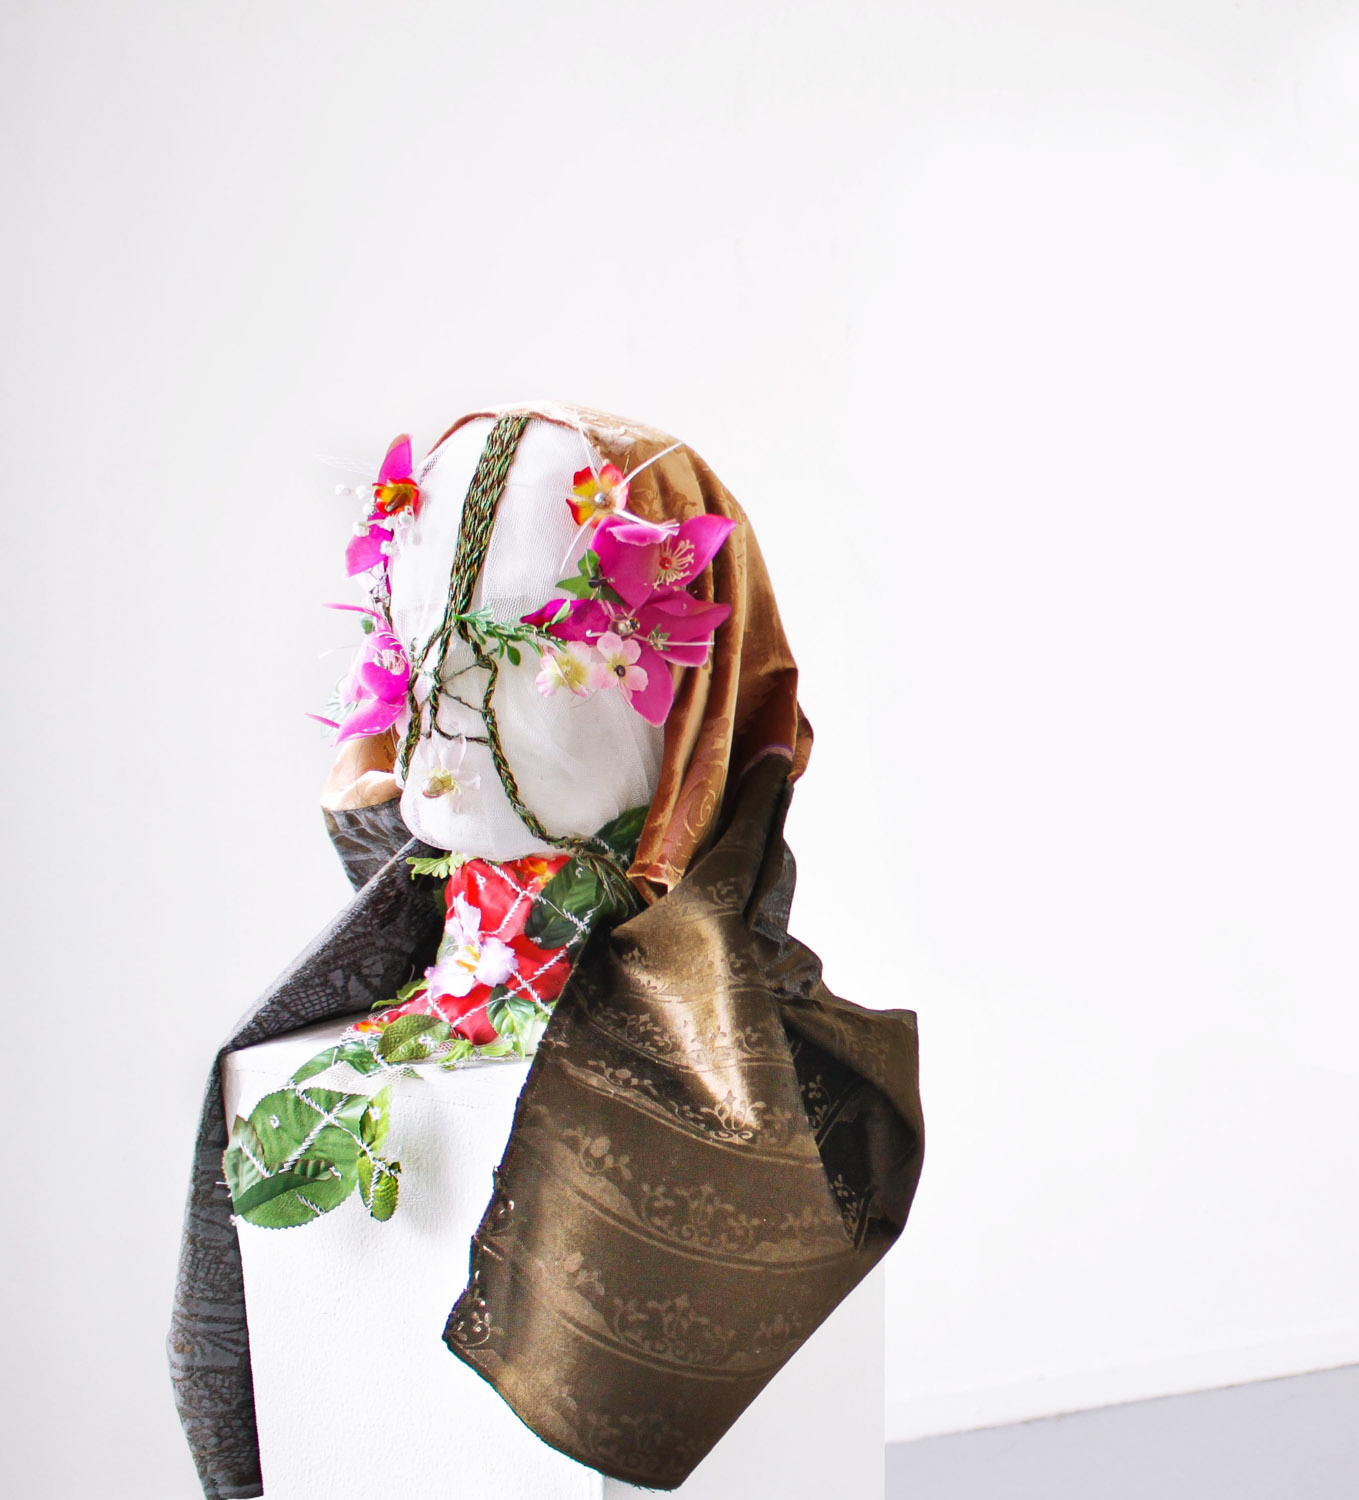 Daon temps - Tissus velours, fils divers, fleurs artificielles - Broderies, gravure laser, sérigraphie - 50 x 35 x 35 cm - 2019
